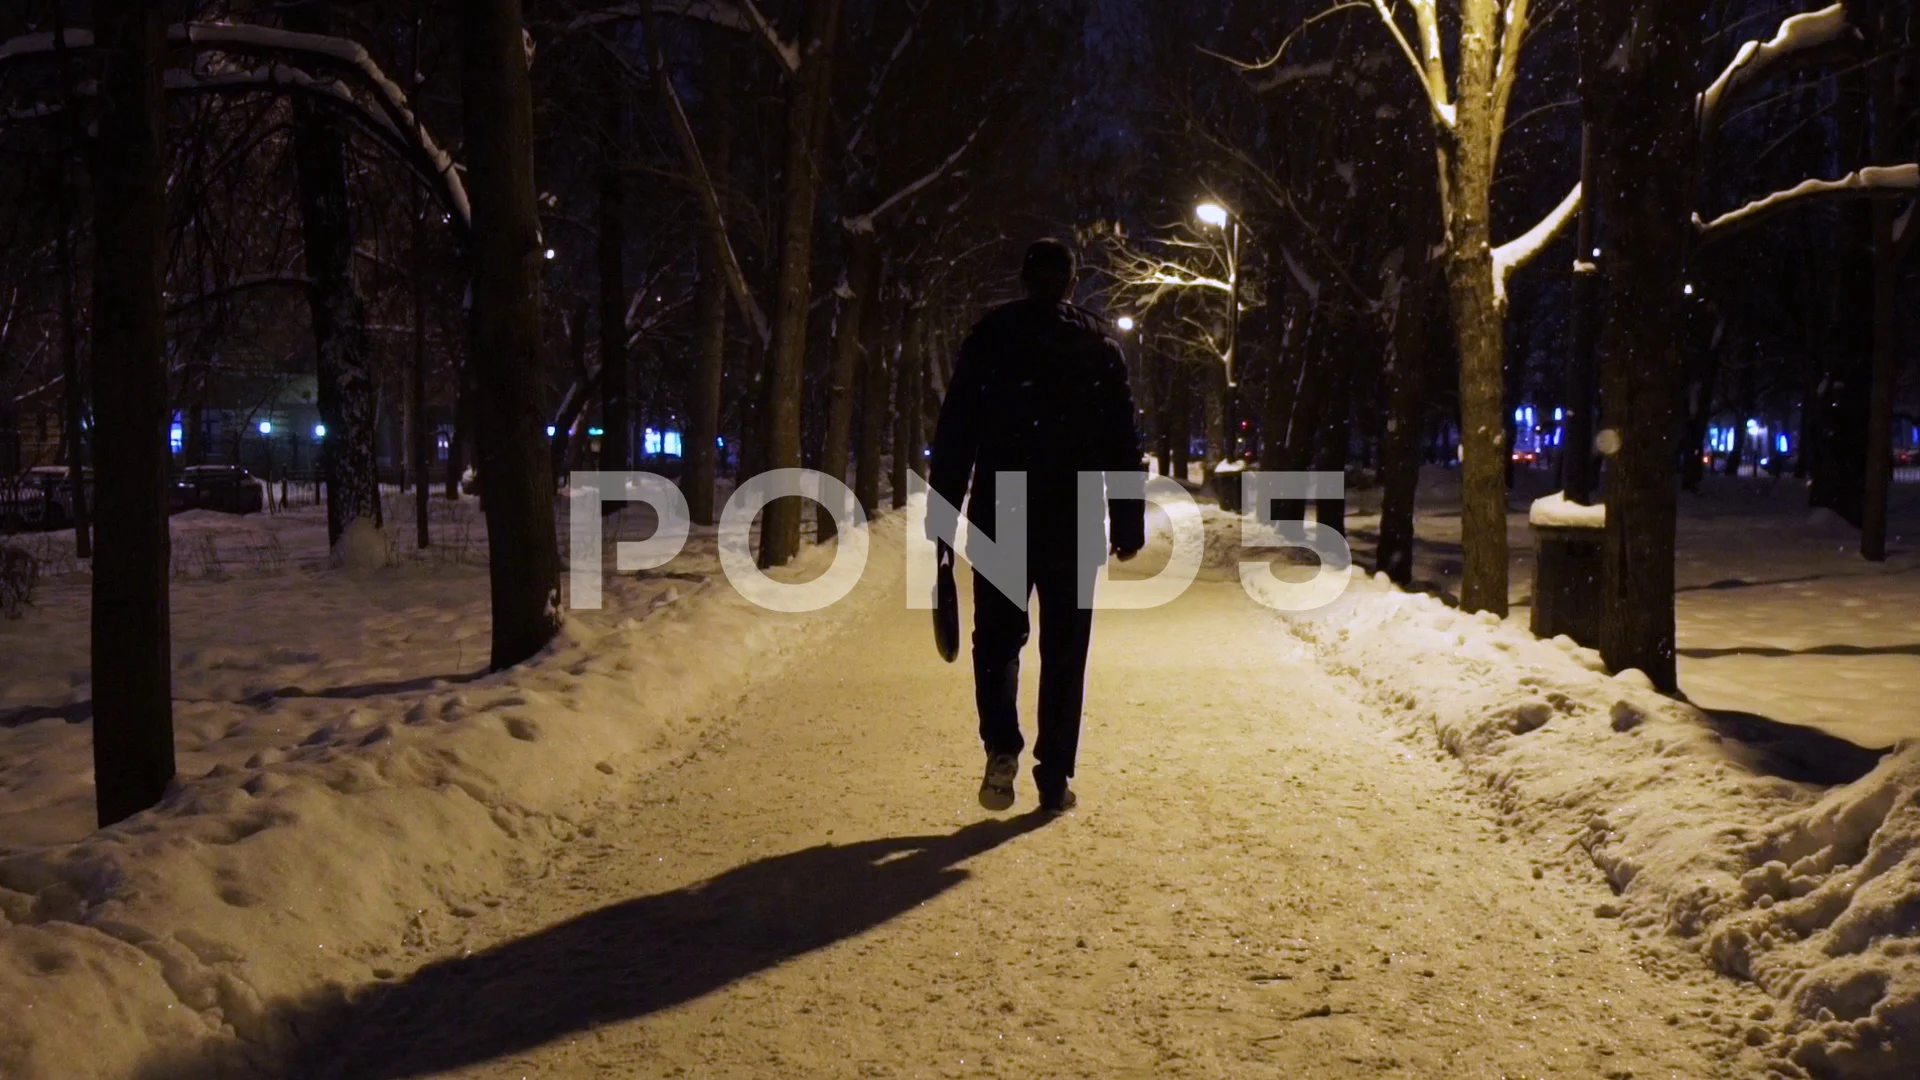 man walking alone at night